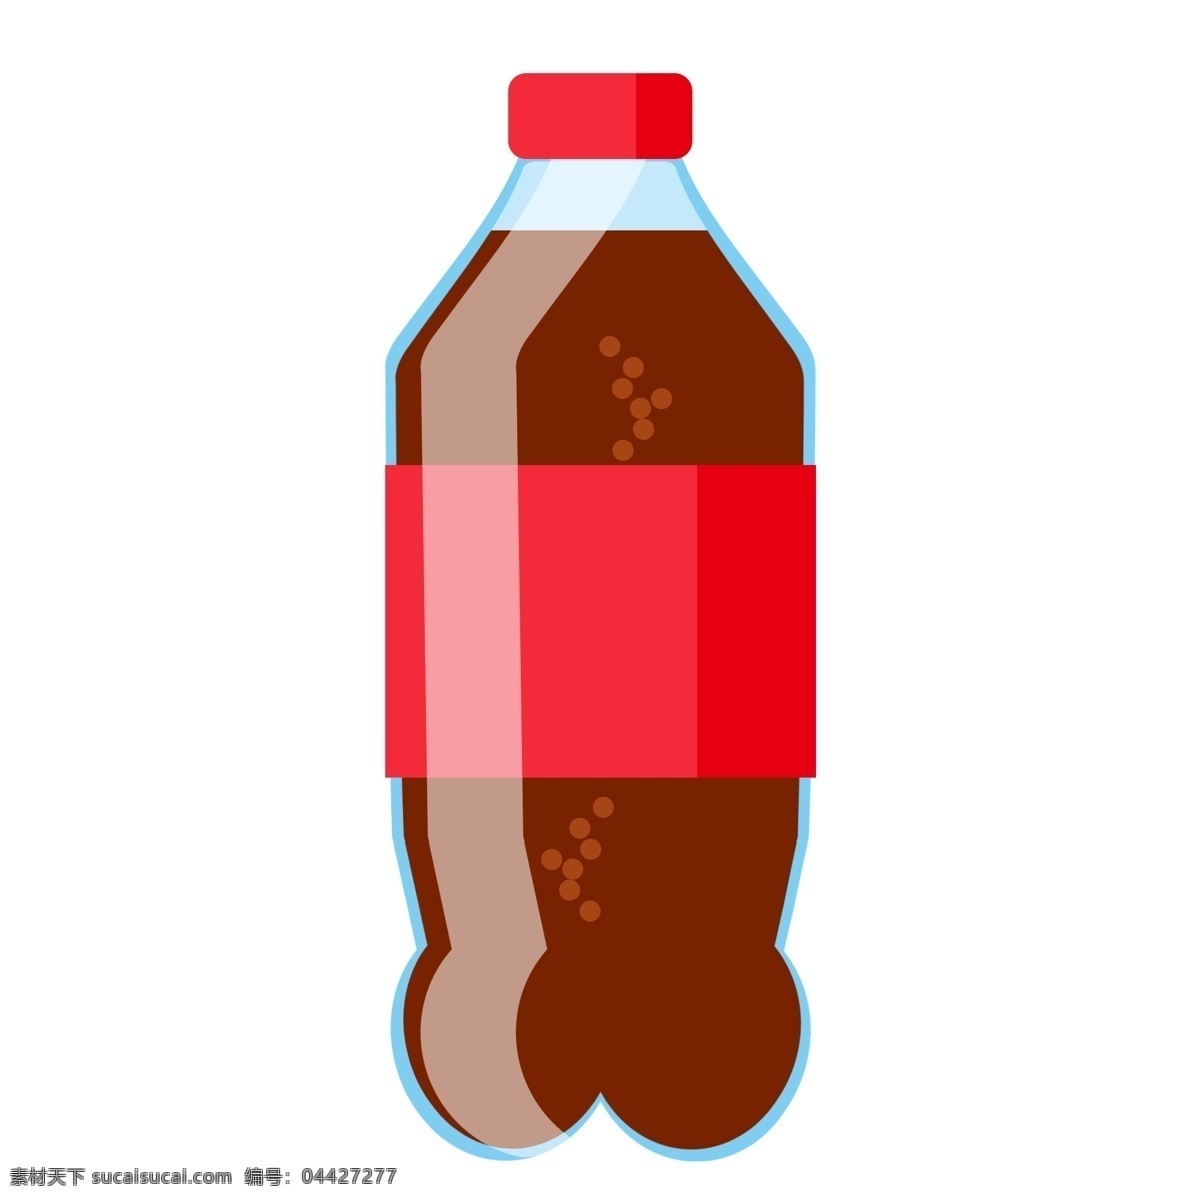 一瓶可乐 可乐 可口可乐 饮料 饮品 夏季 肯德基 麦当劳 罐装可乐 可乐广告 可乐海报 可乐宣传图 大瓶可乐 玻璃杯 餐饮美食 饮料酒水